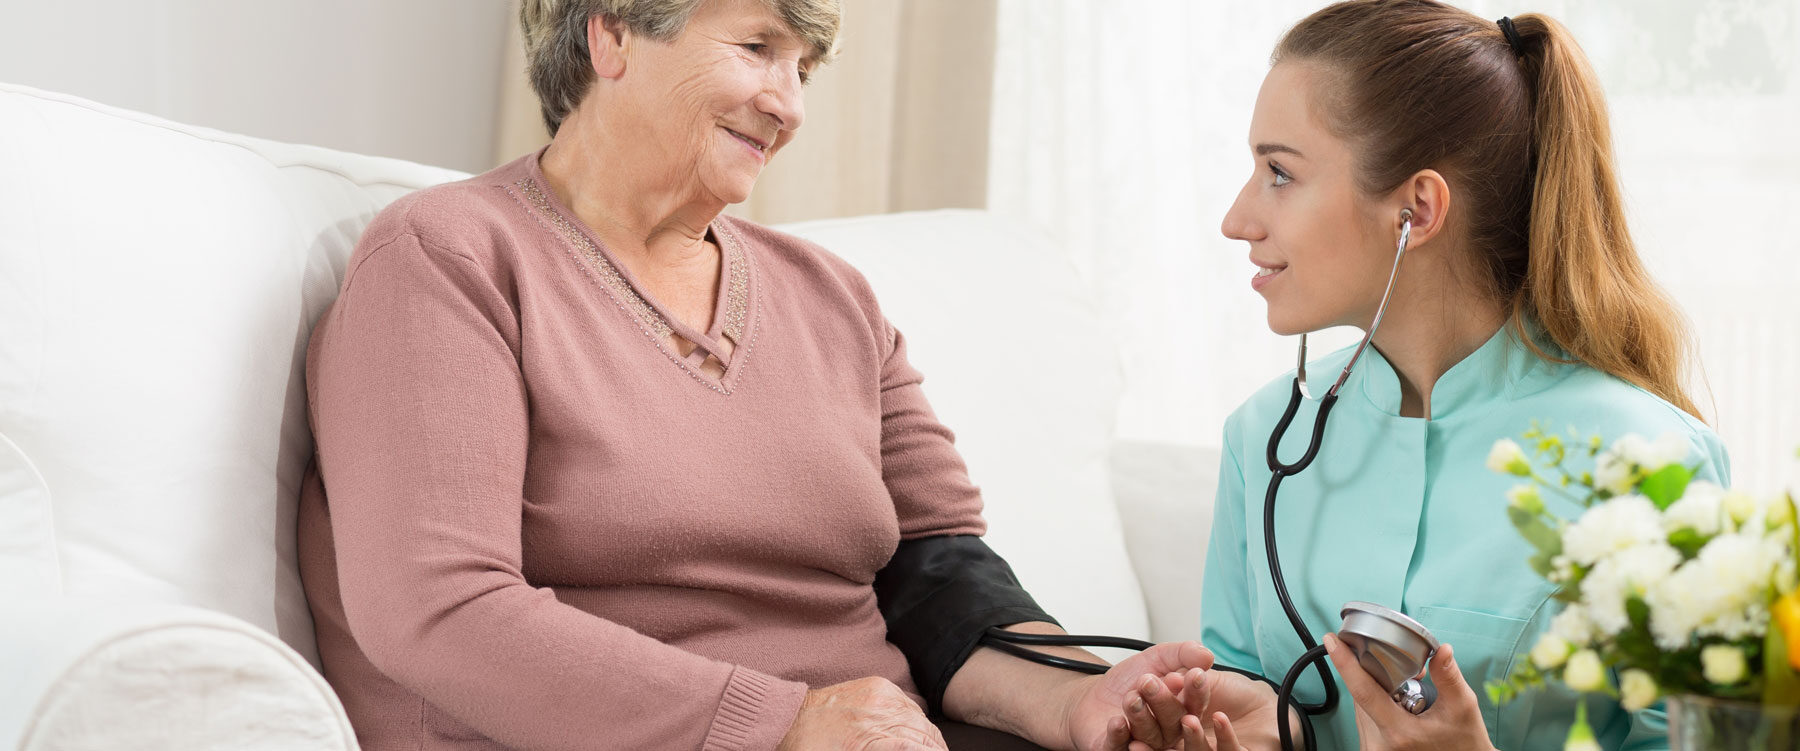 Carer checking older person's blood pressure